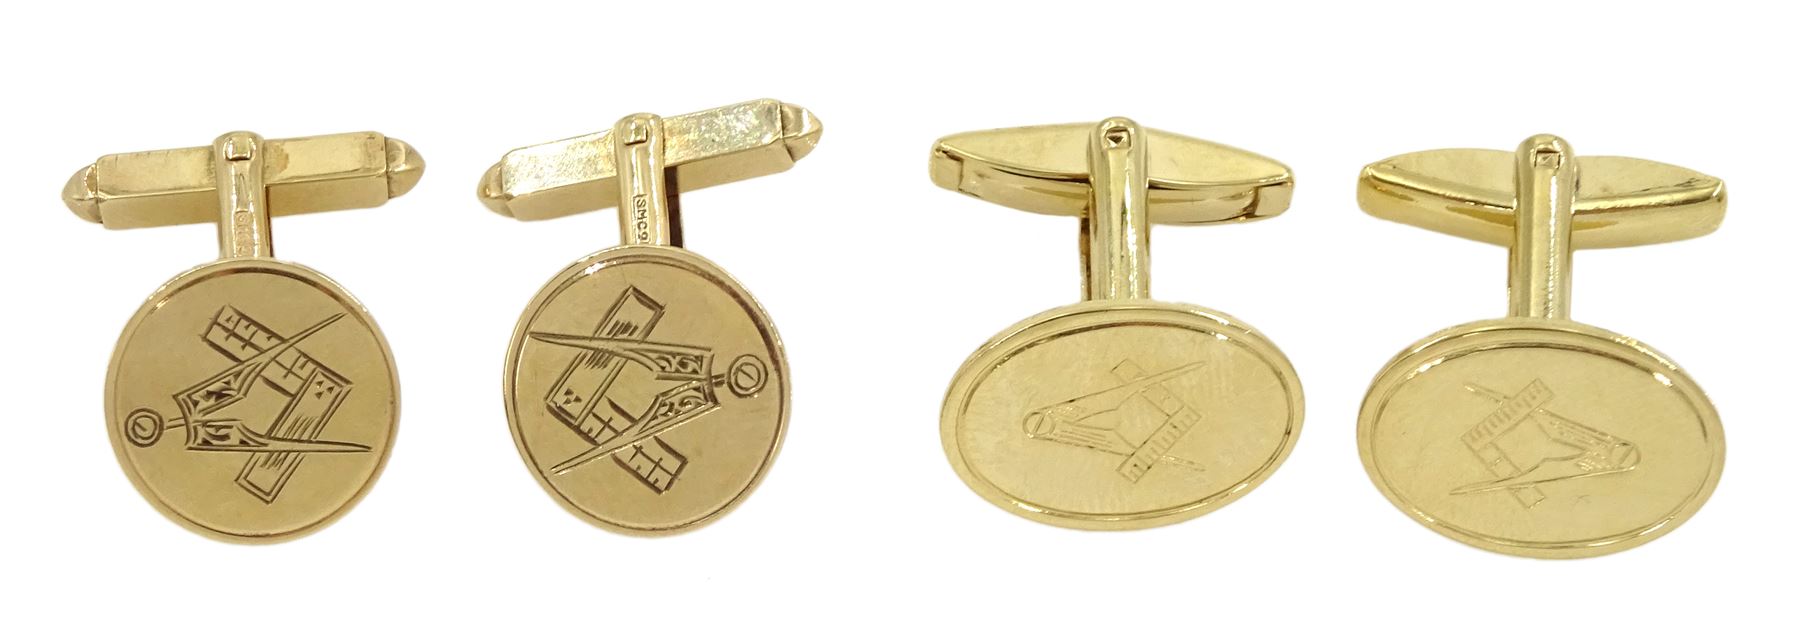 Pair of 9ct gold Masonic cufflinks